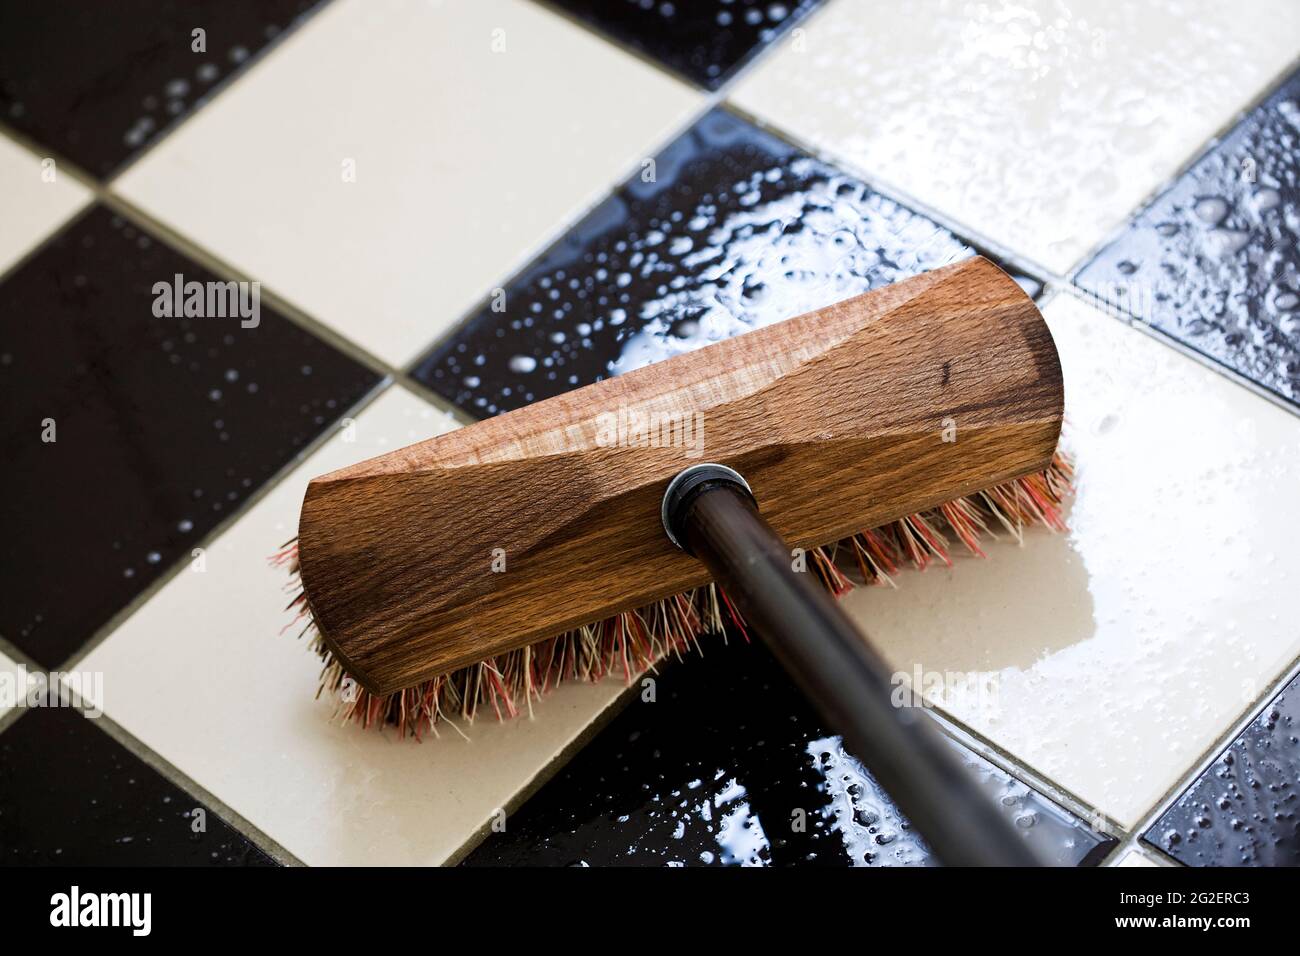 Scrubbing a tiled floor Stock Photo